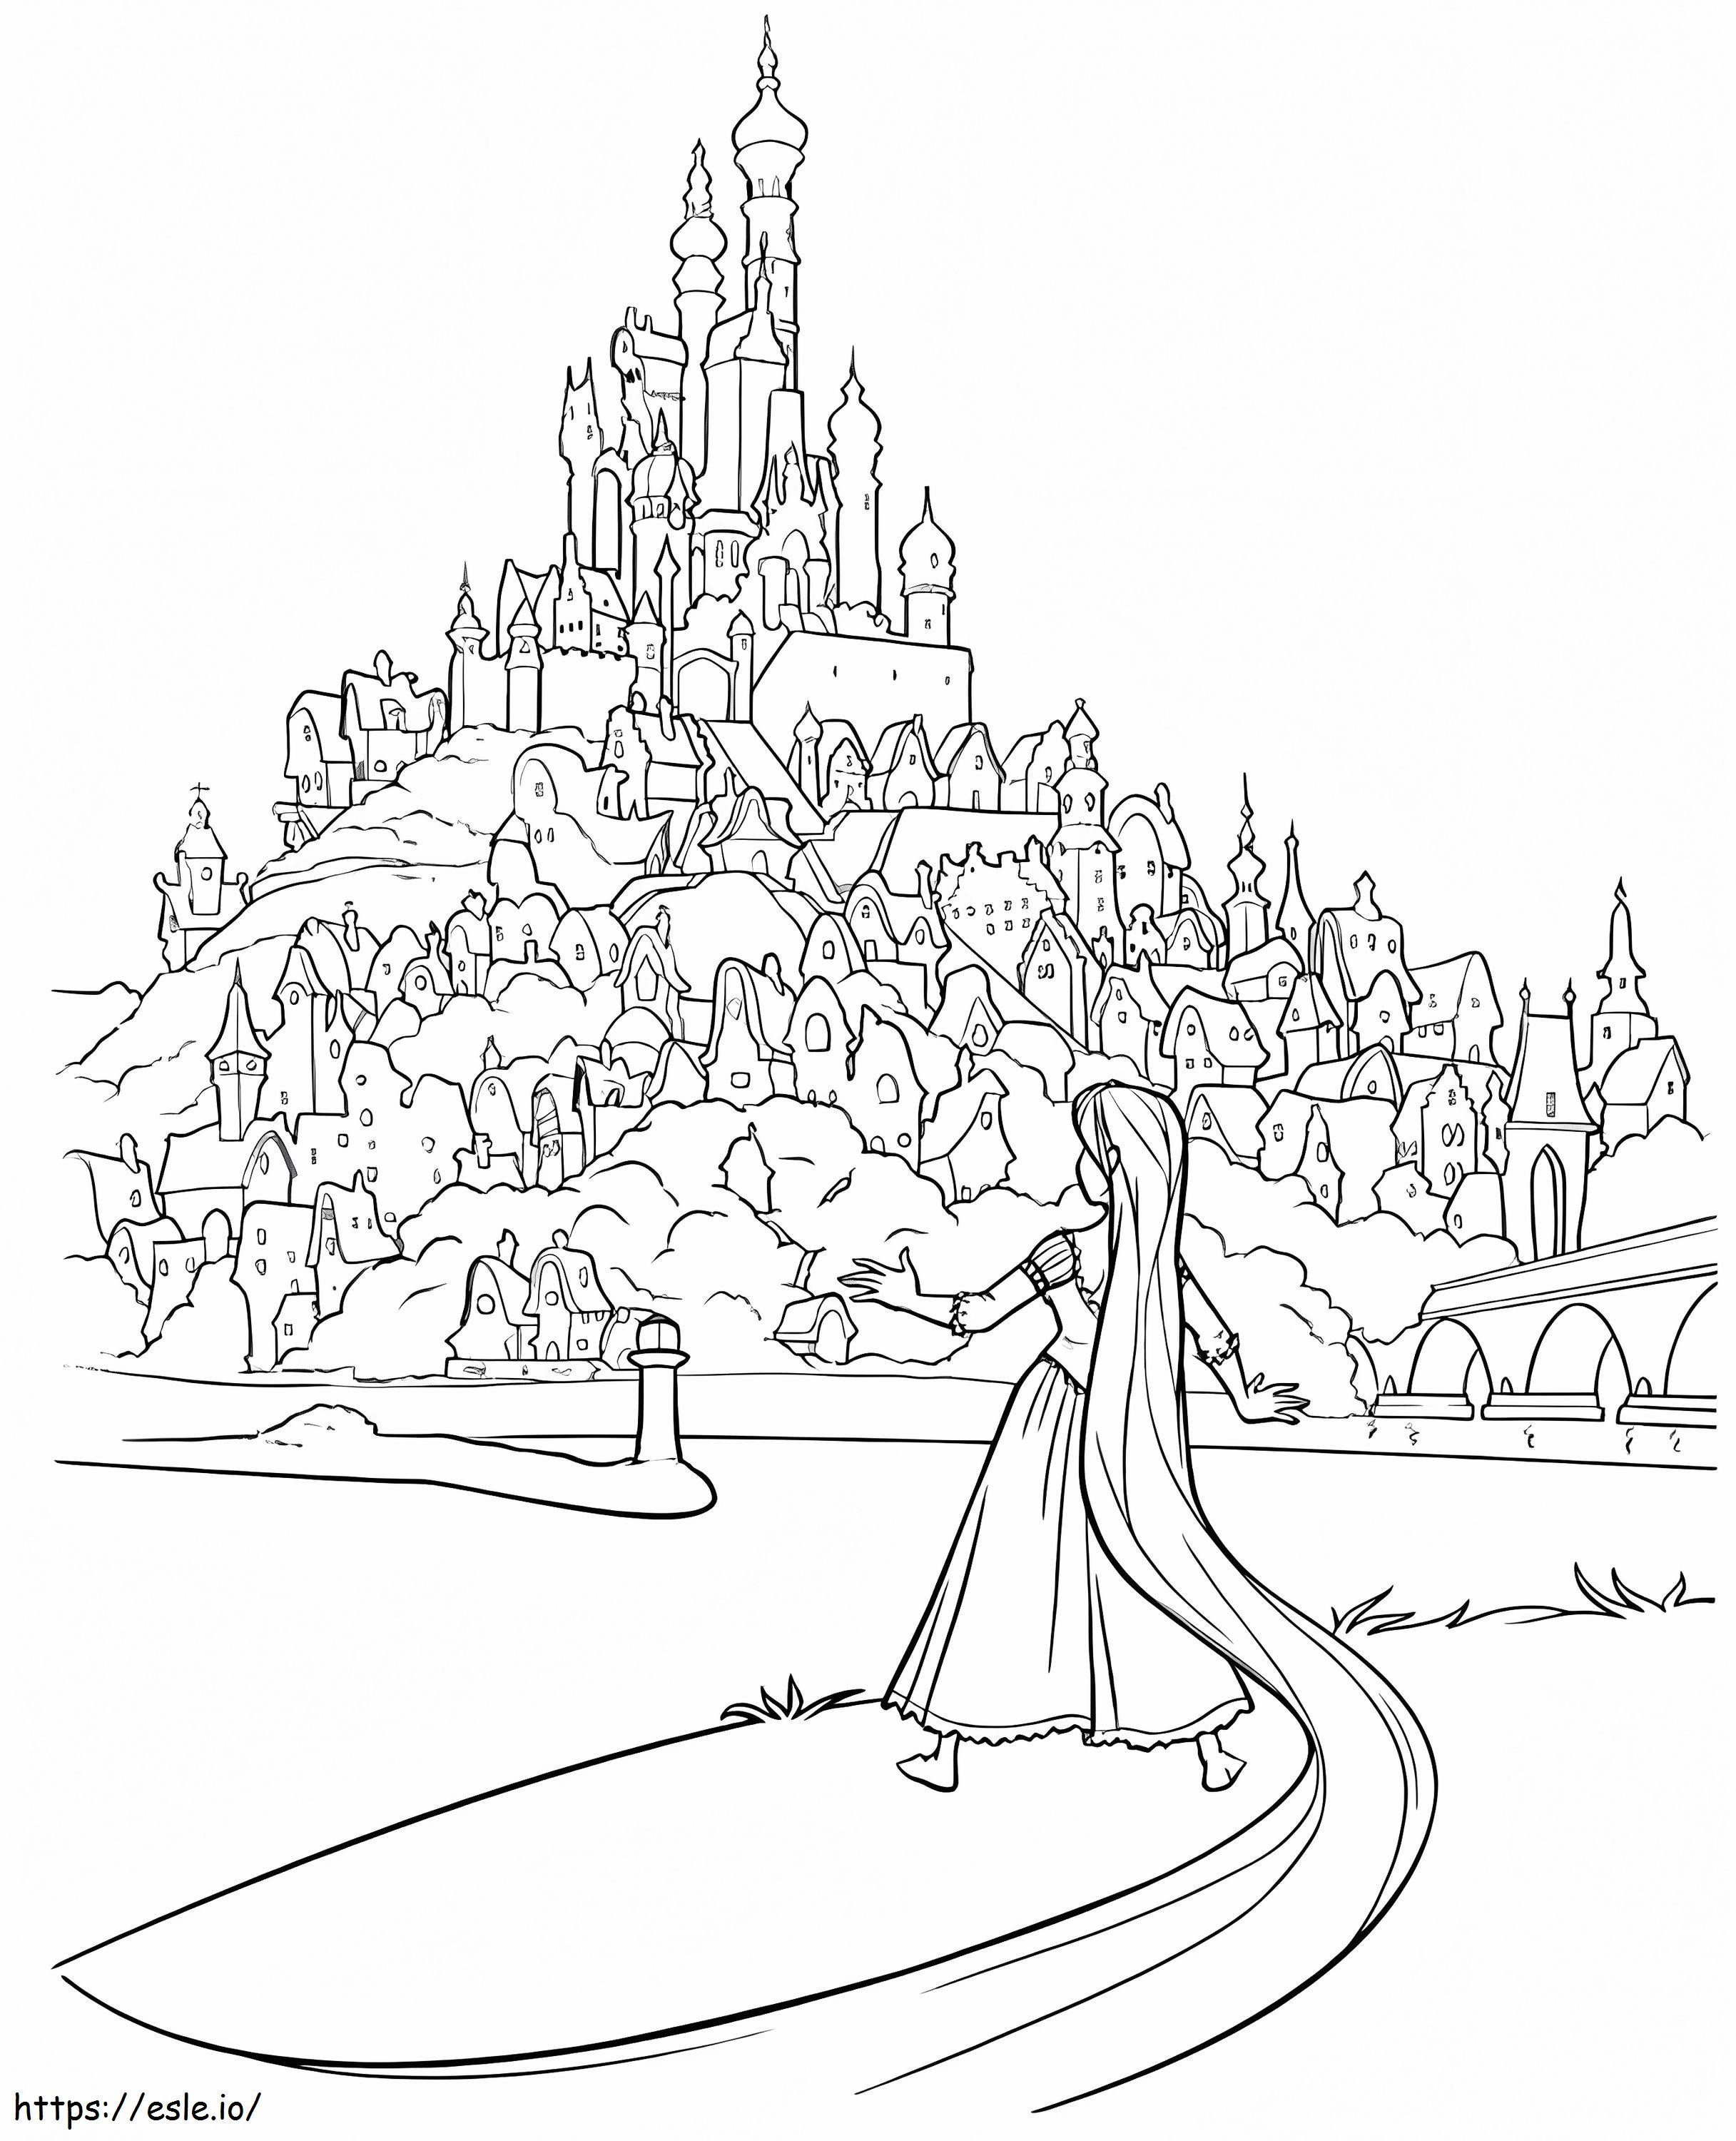 Rapunzel stand da und blickte auf das Königreich ausmalbilder